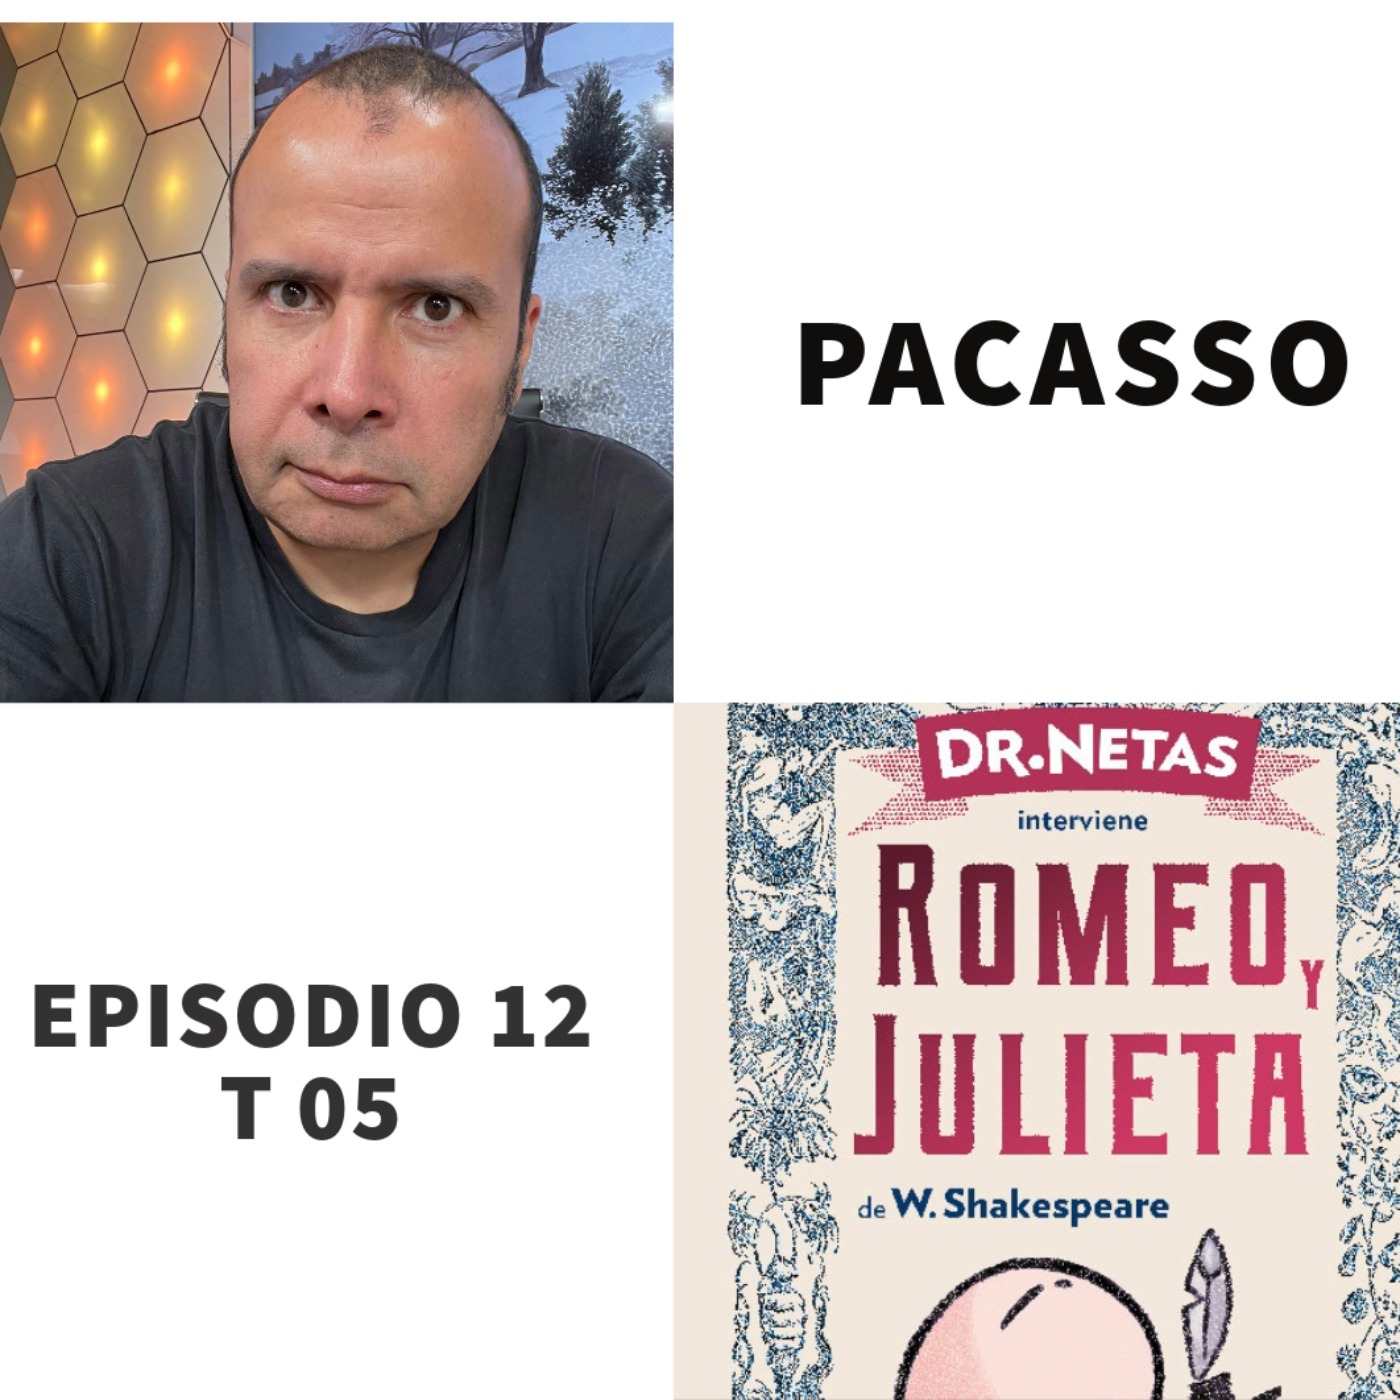 cover art for S05 E12: Dr. Netas interviene Romeo y Julieta con Pacasso.